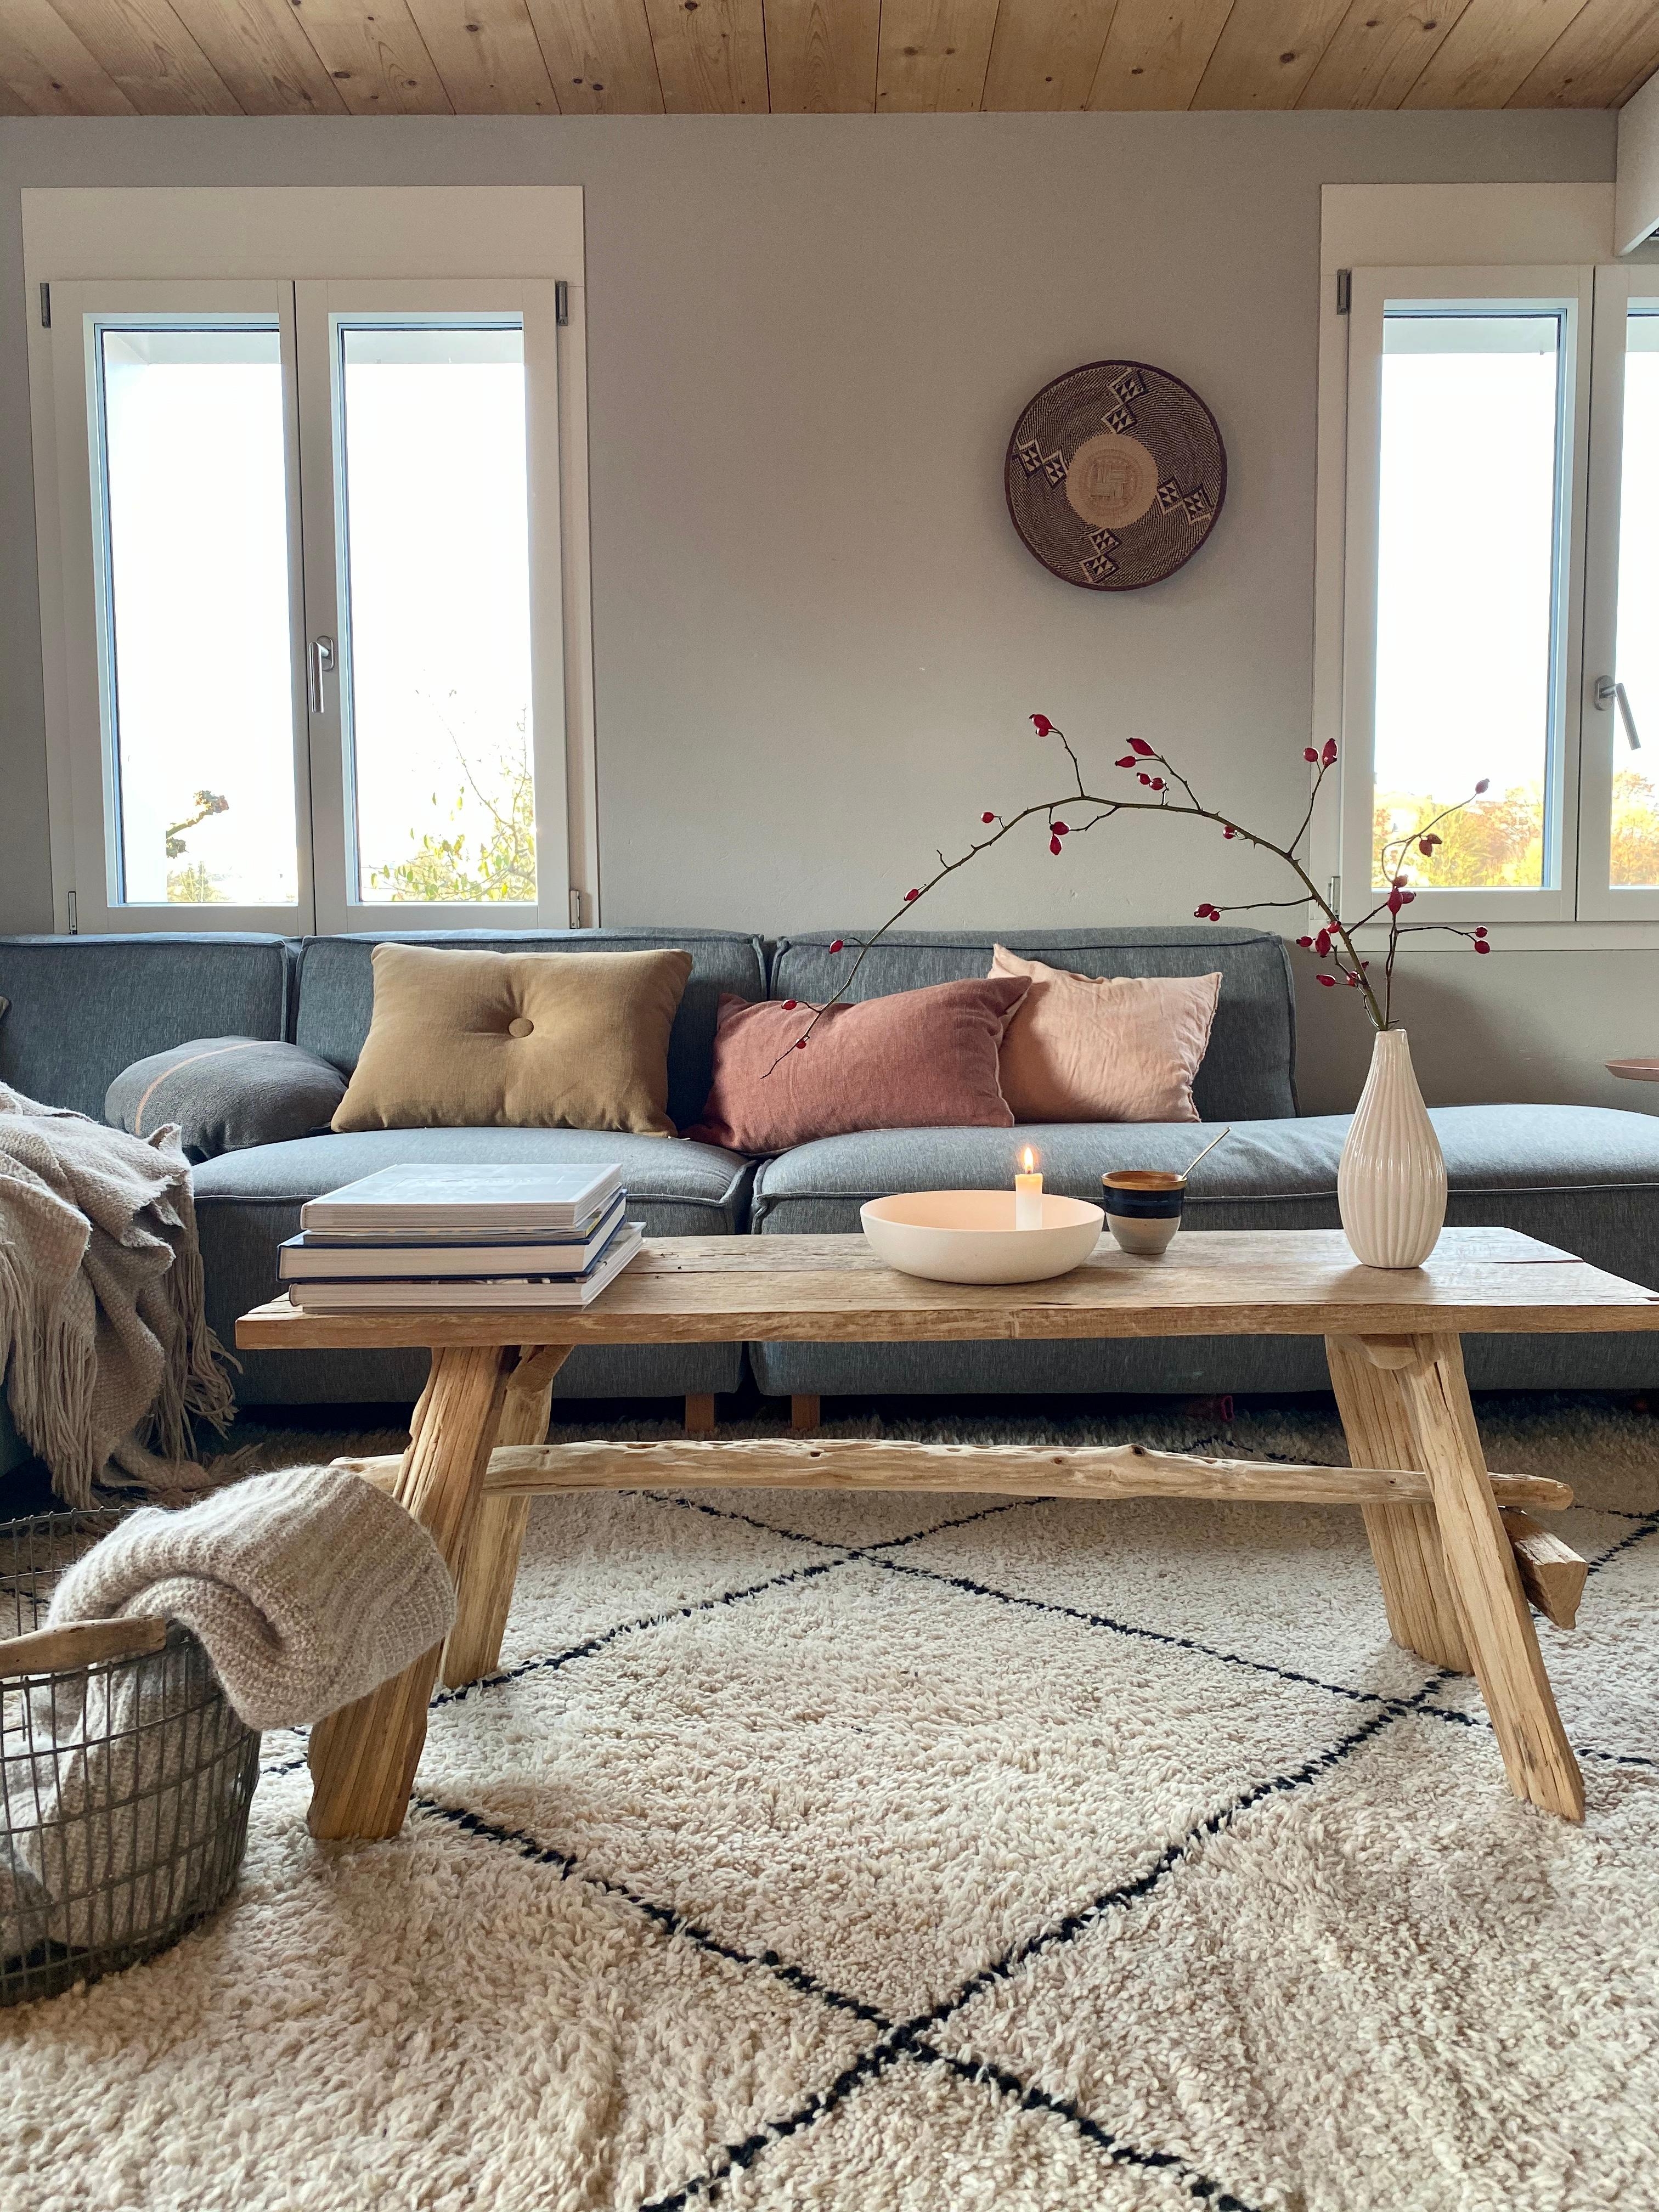 Wir lieben unser neues Sofa und auch sonst gab es ein paar Veränderungen im Wohnzimmer.  
#couch#wohnzimmer#sofaecke